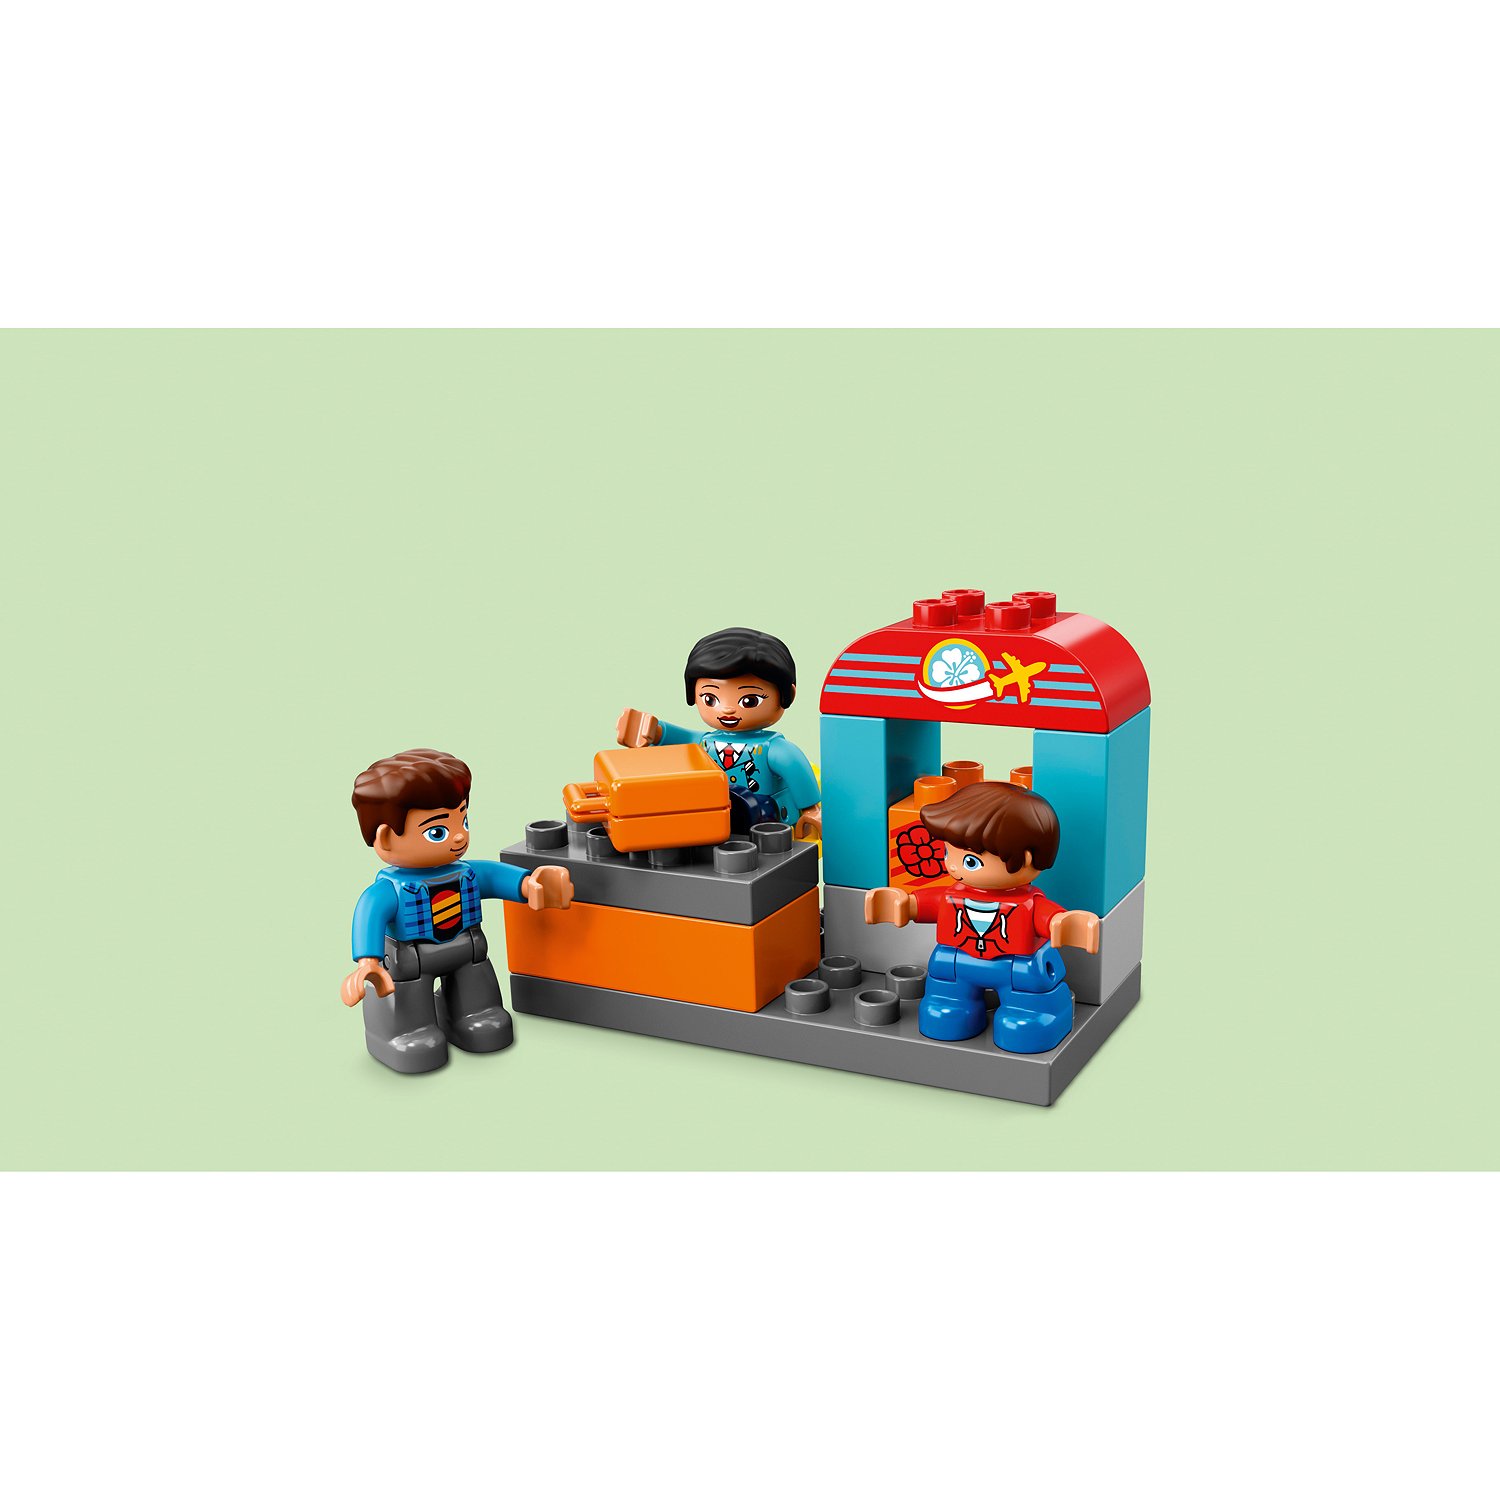 Конструктор LEGO DUPLO 10871 Аэропорт